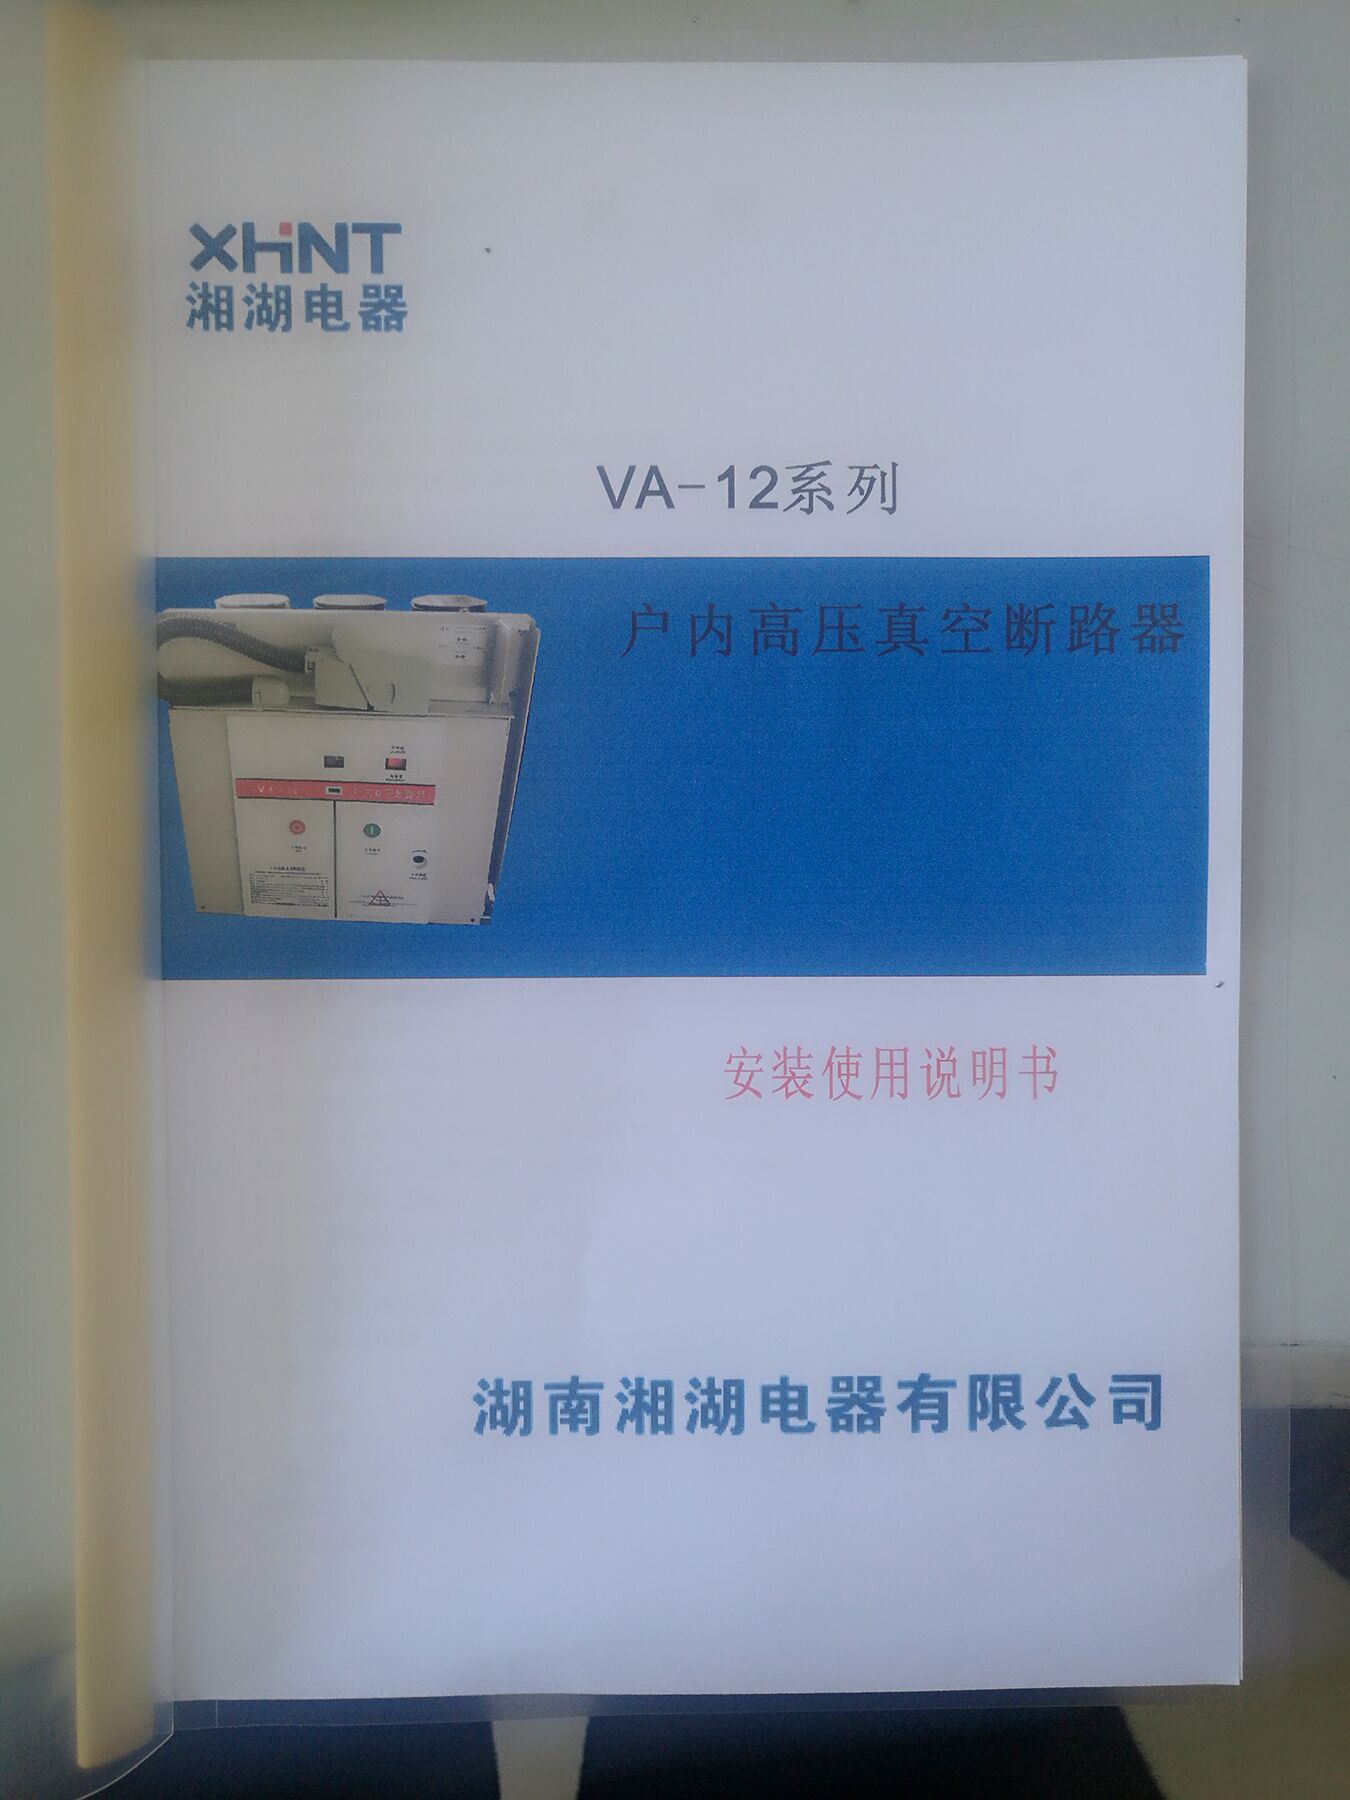 TBV200LV	南京托肯霍尔电压传感器线路图:湖南湘湖电器